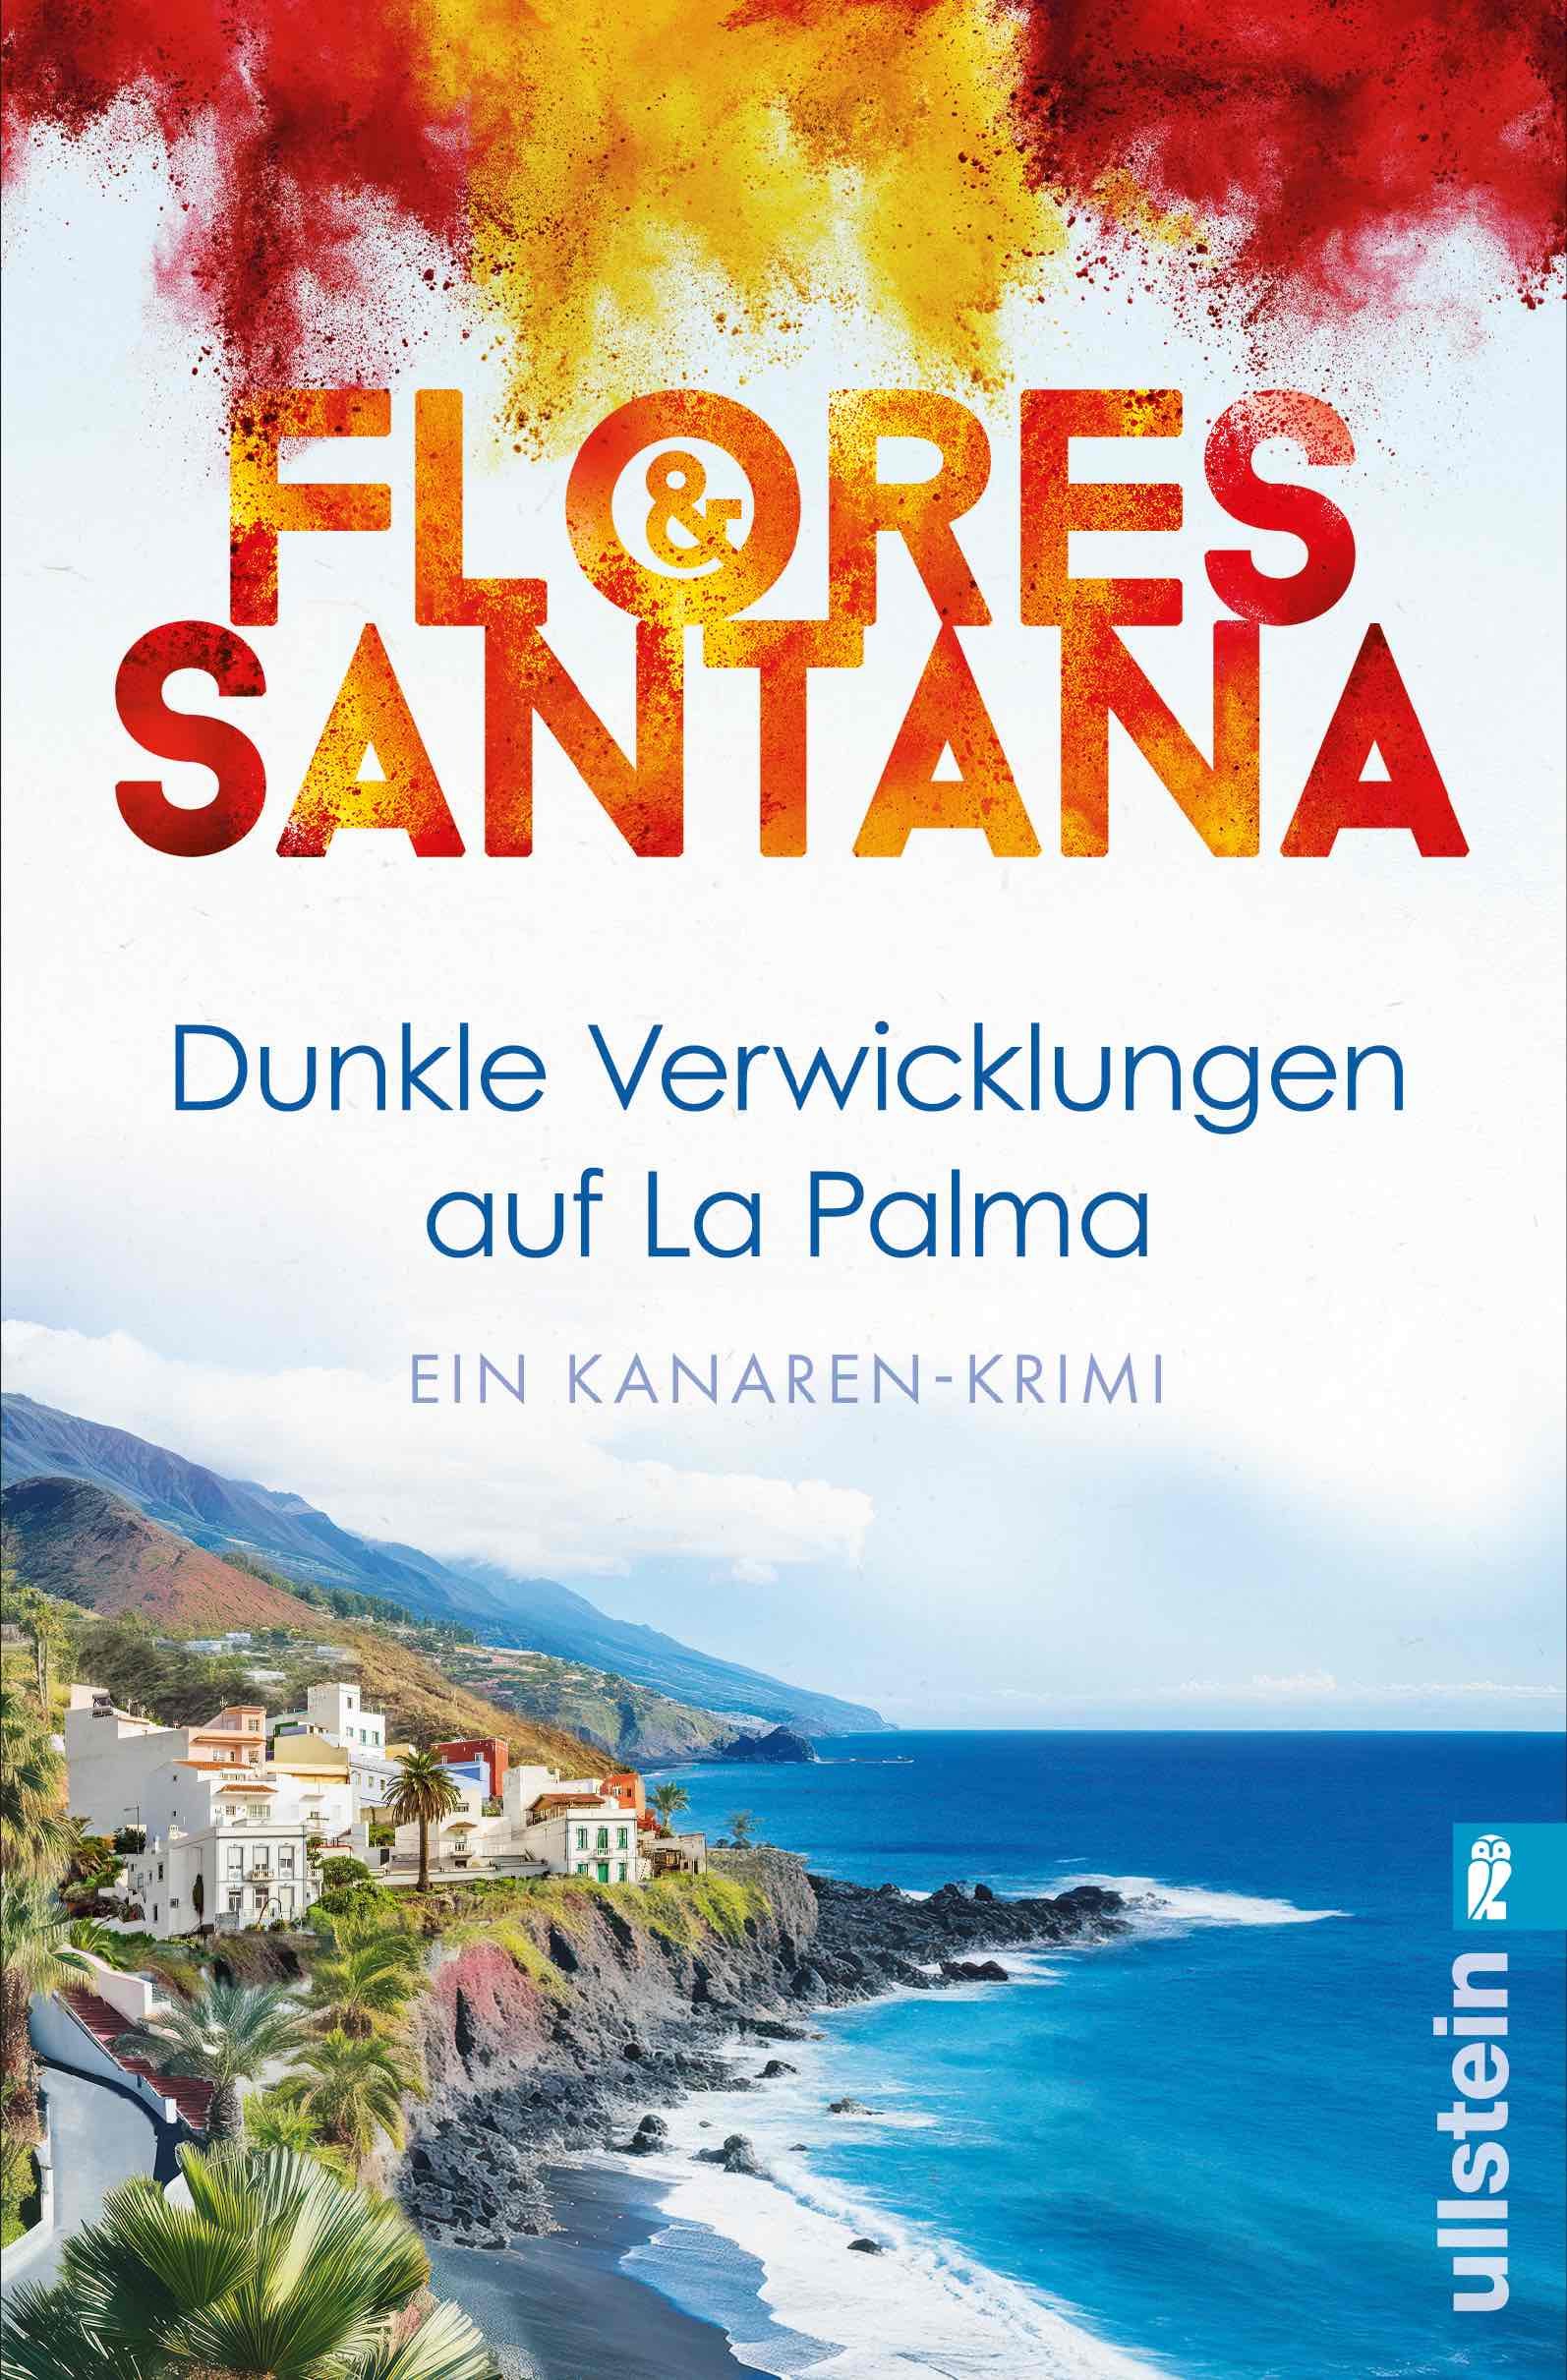 Flores Santana, Dunkle Verwicklungen auf La Palma kl.jpg